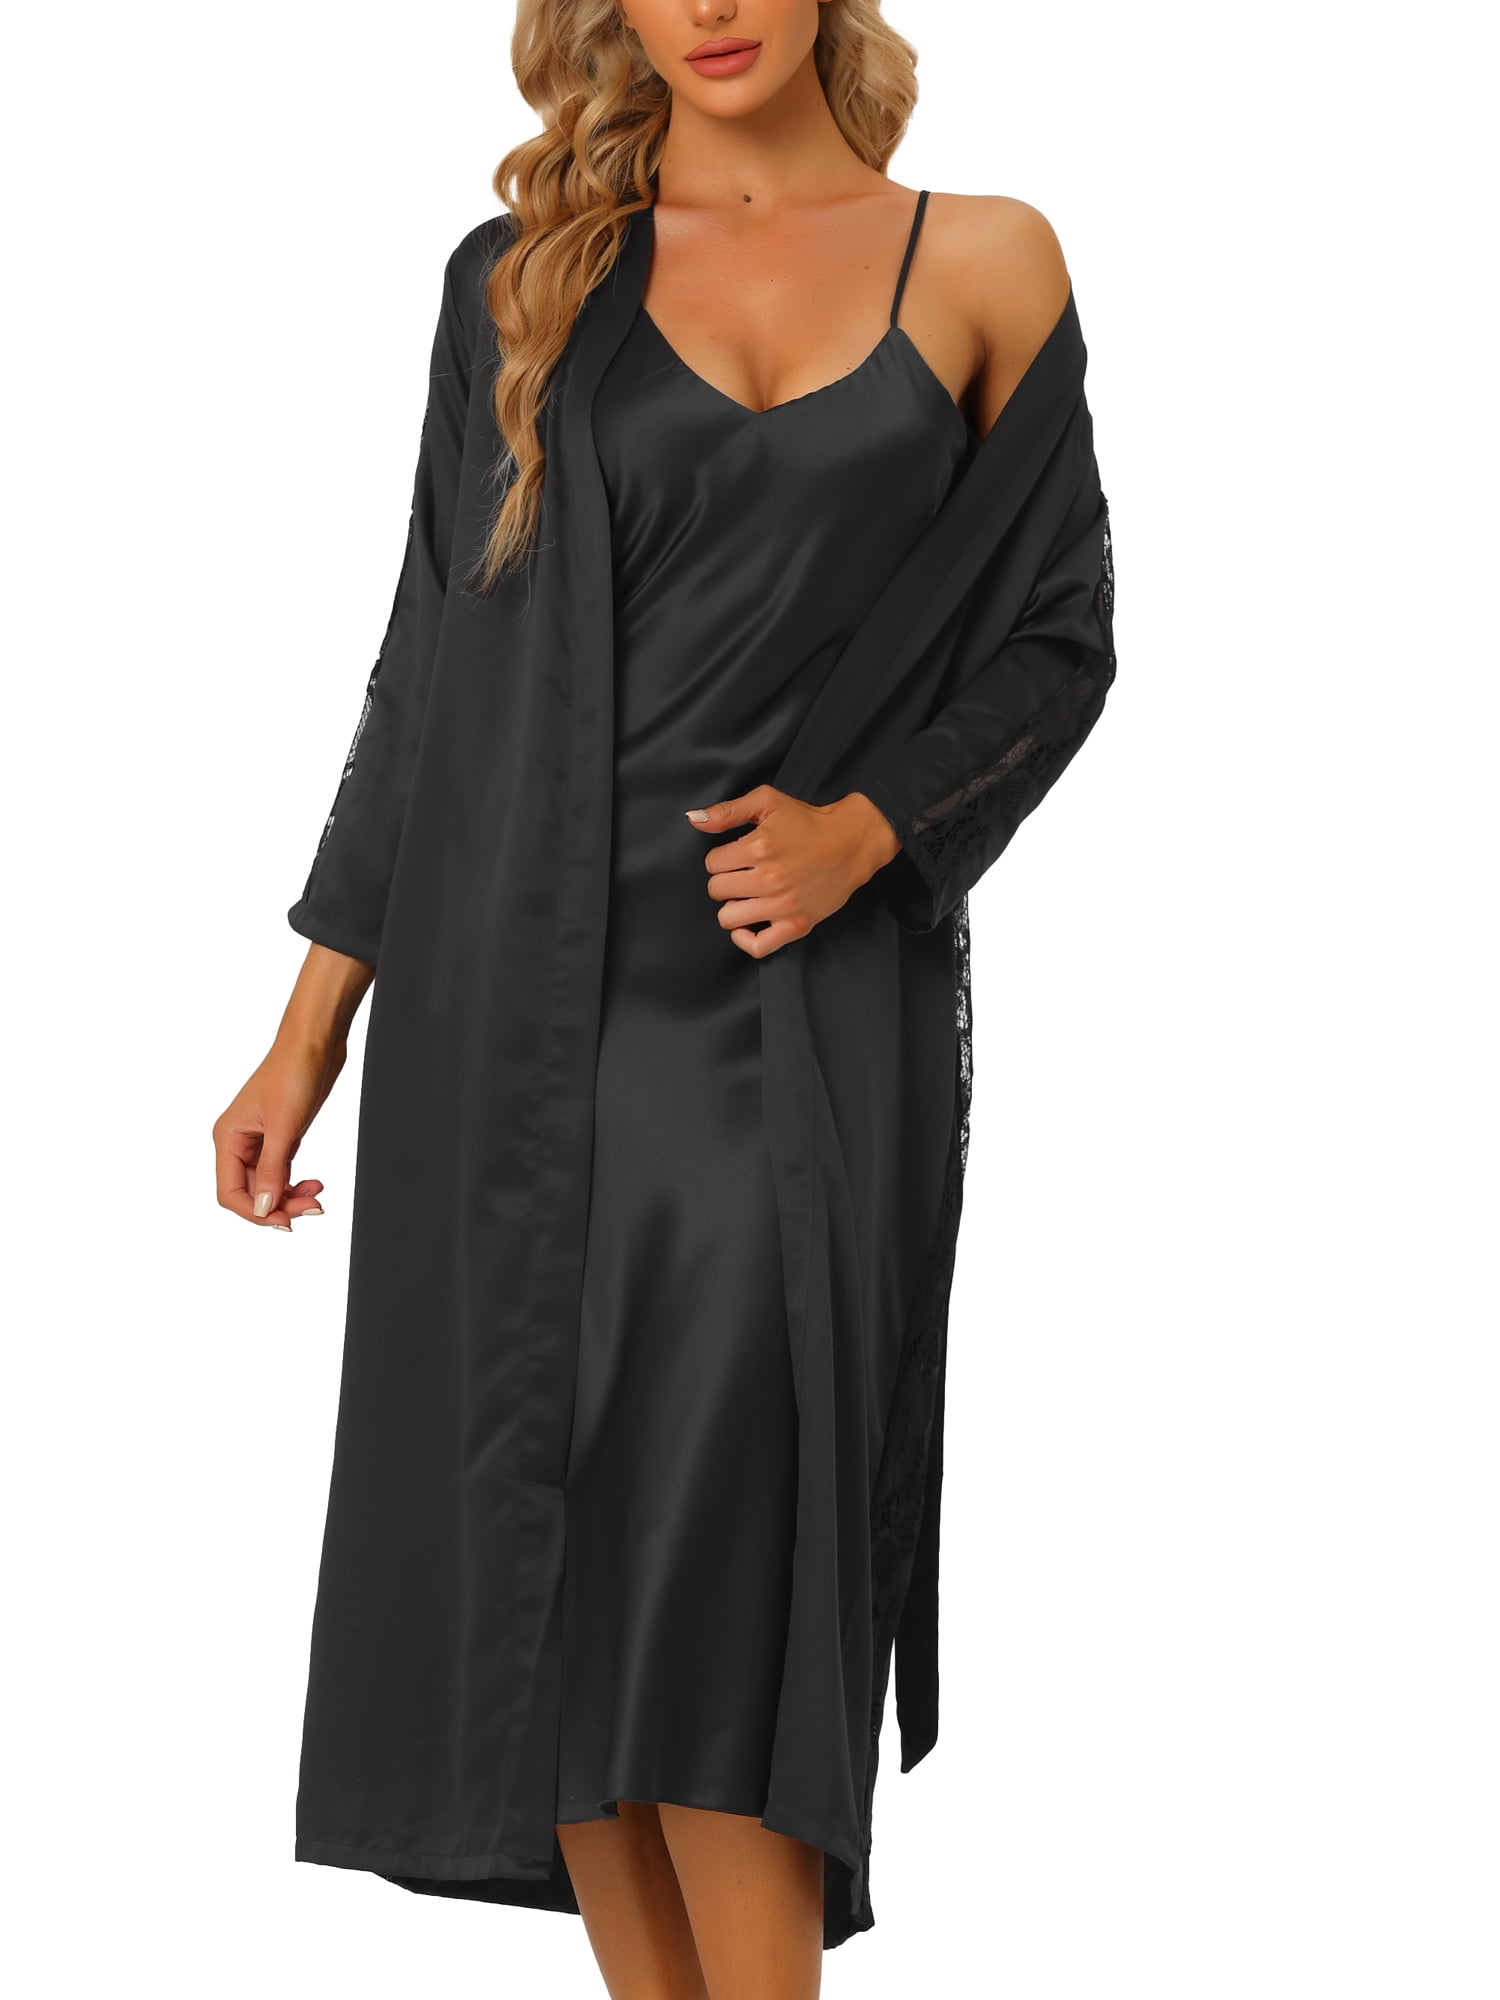 Elegant Lace 15 Denier Long Evening Gown Robe Plus Size Lingerie Adult  Women  eBay